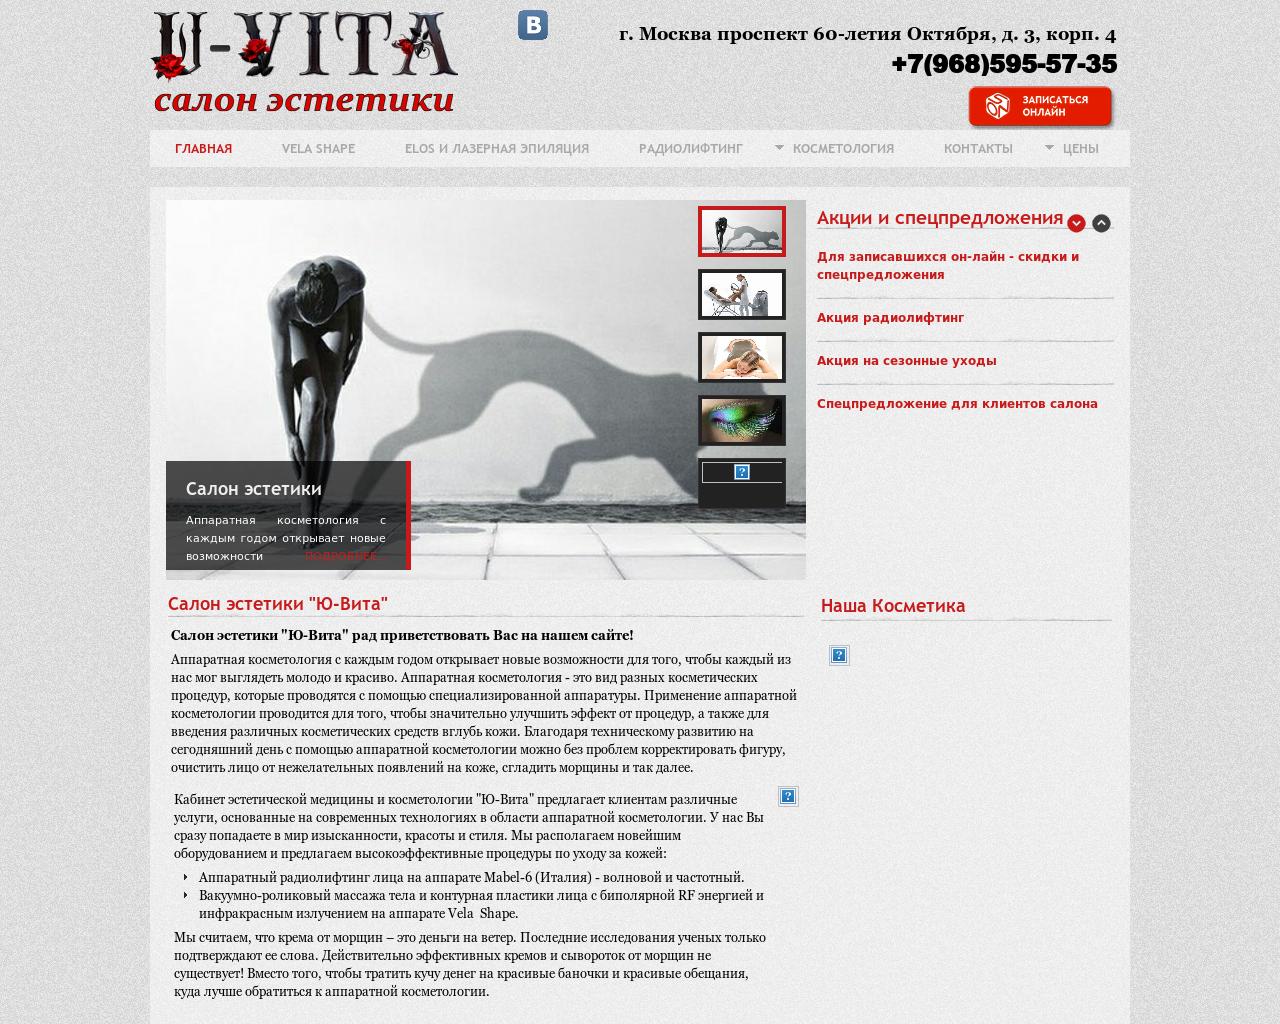 Изображение сайта u-vita.ru в разрешении 1280x1024